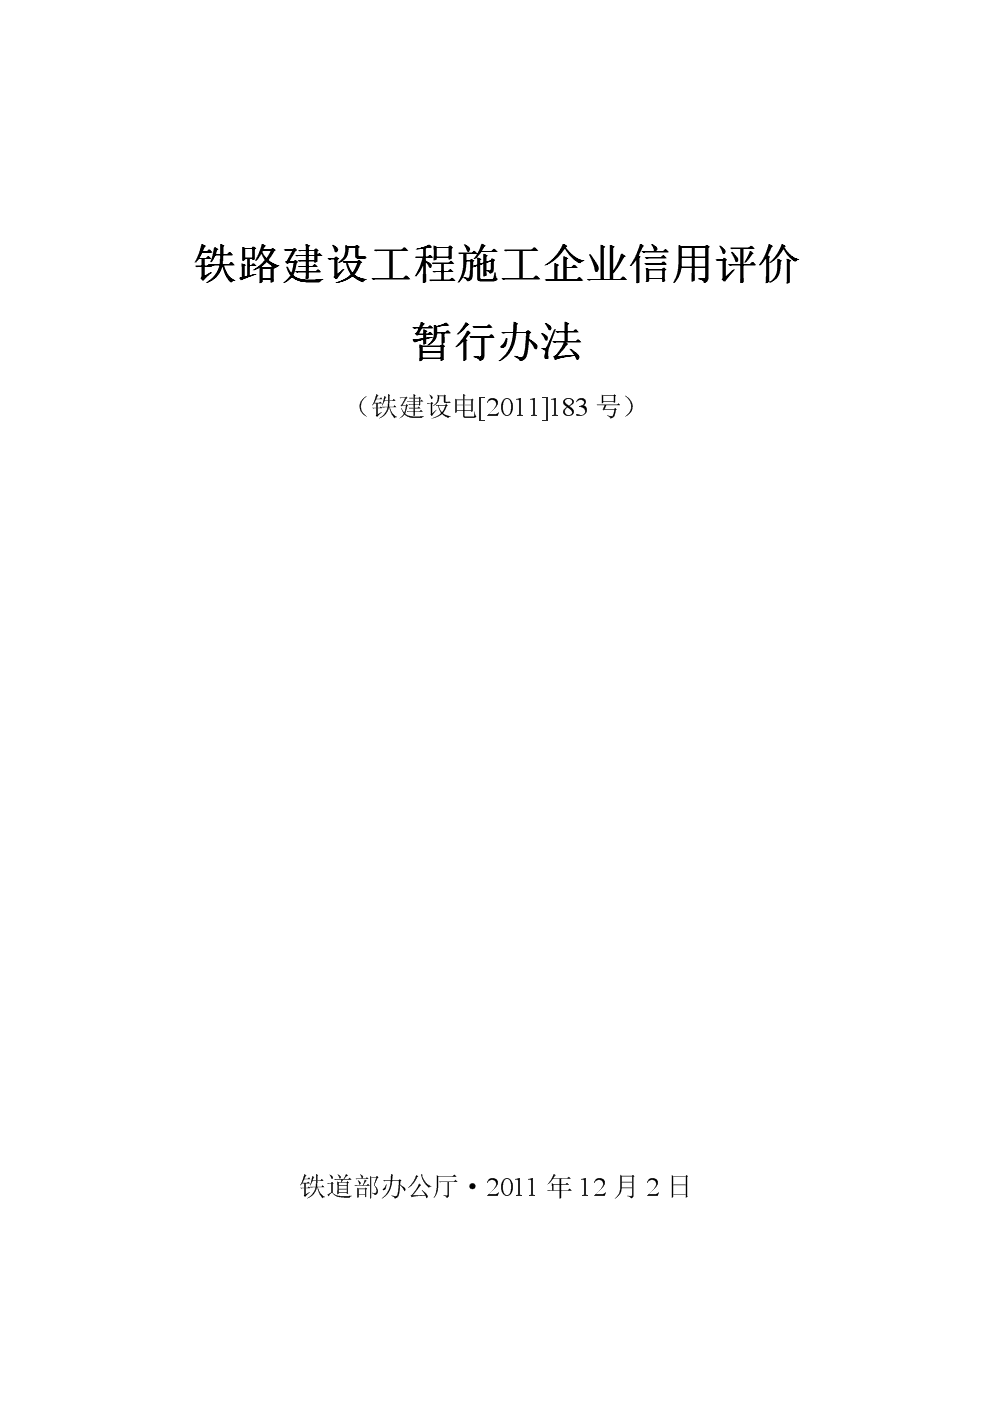 火狐电竞:铁建社[2011]183号文：铁路建设工程施工企业信用评价暂行办法